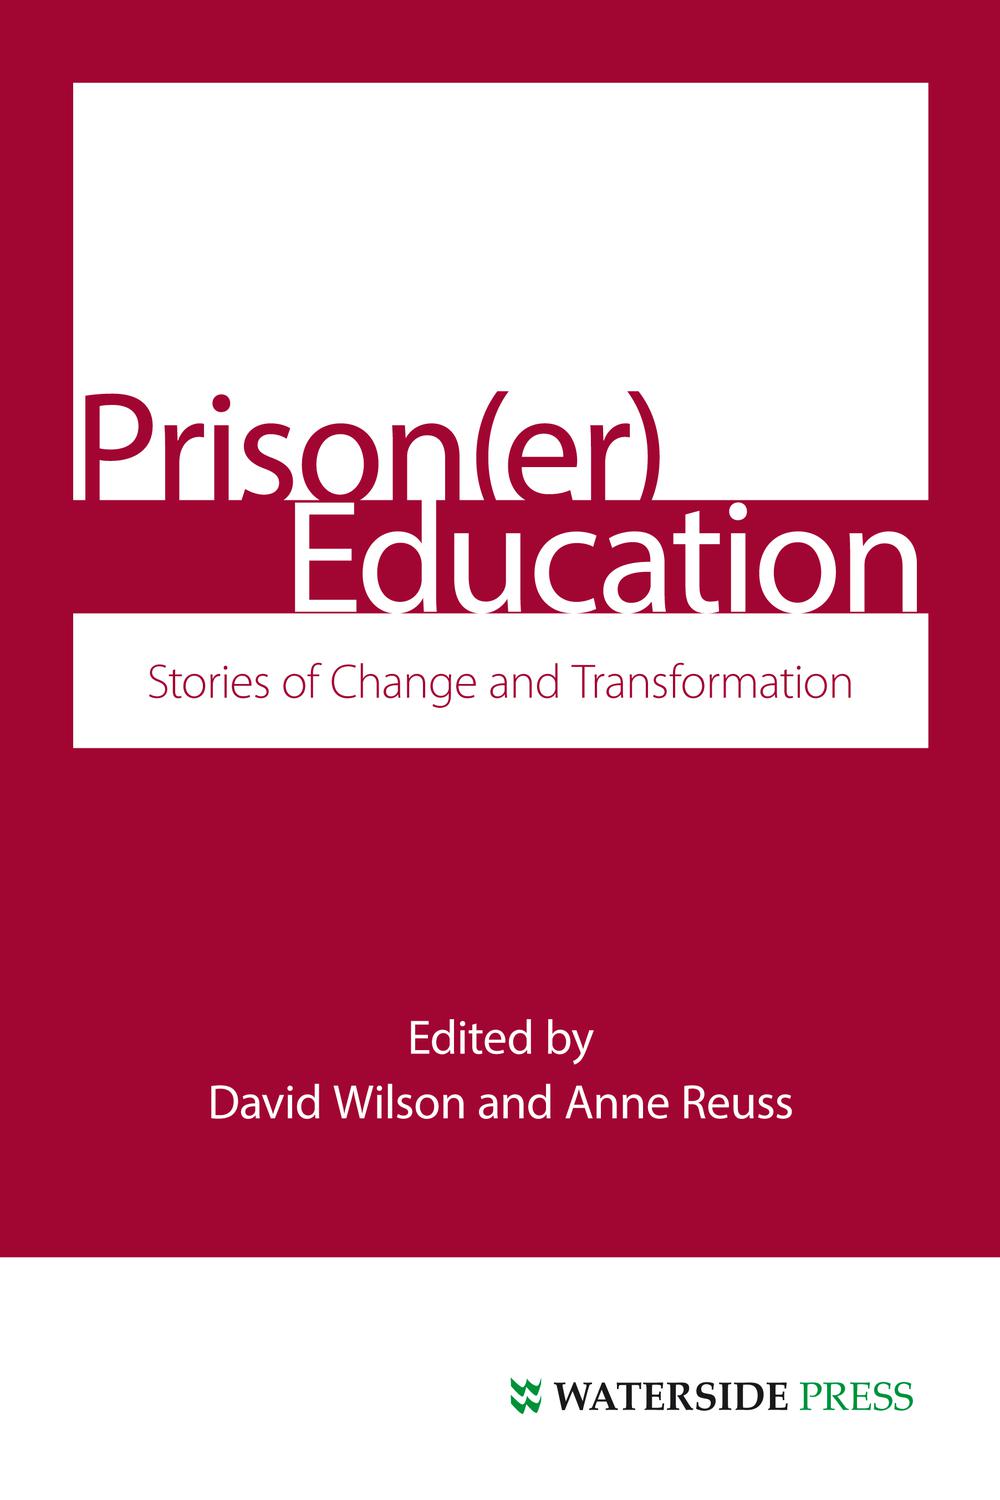 Prison(Er) Education - Wilson, David, Reuss, Anne